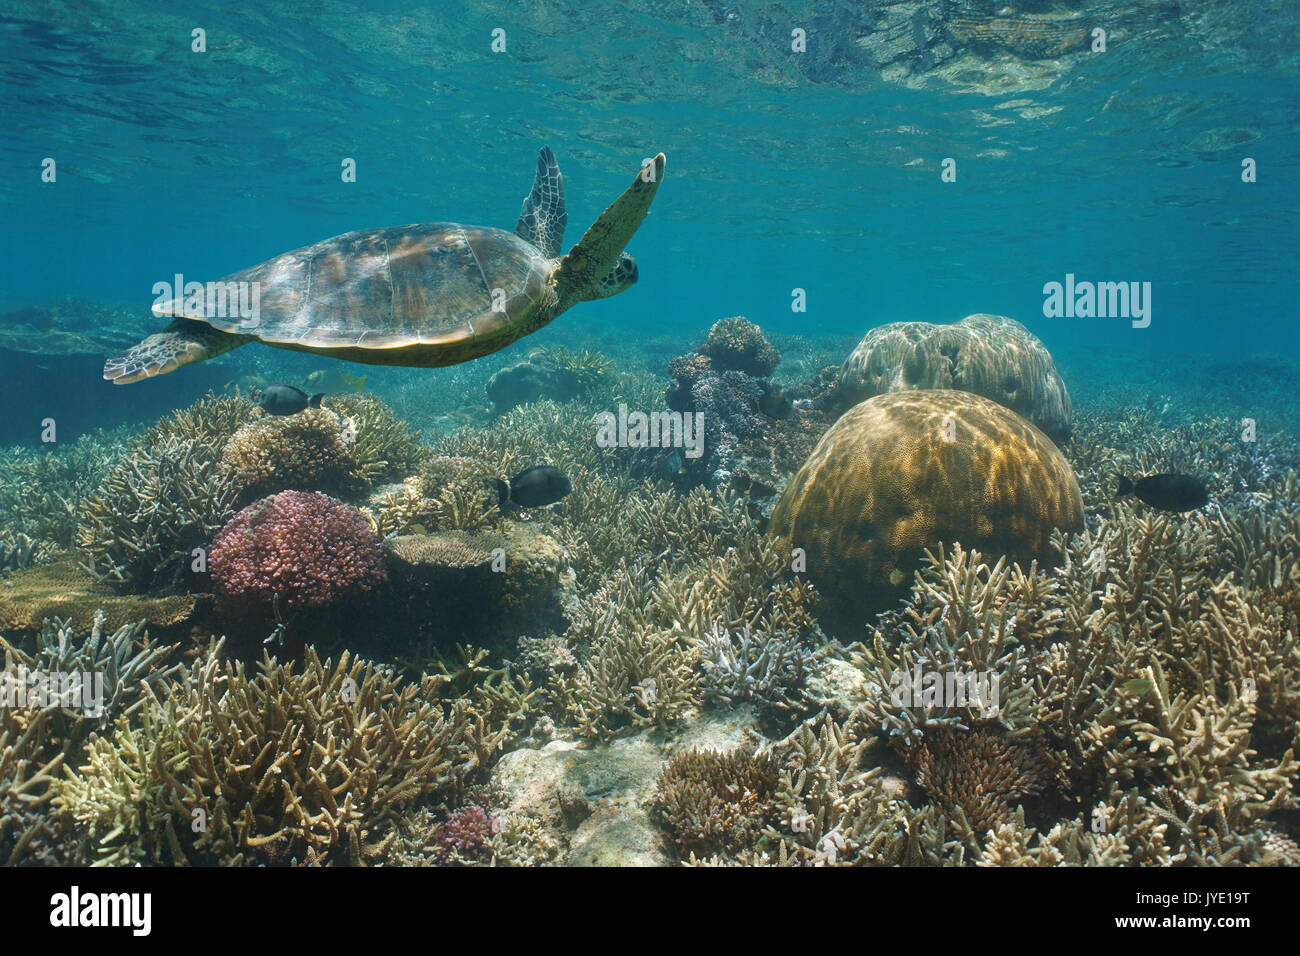 Beau récif de corail avec une tortue de mer verte sous l'eau, l'océan Pacifique sud, la Nouvelle Calédonie Banque D'Images